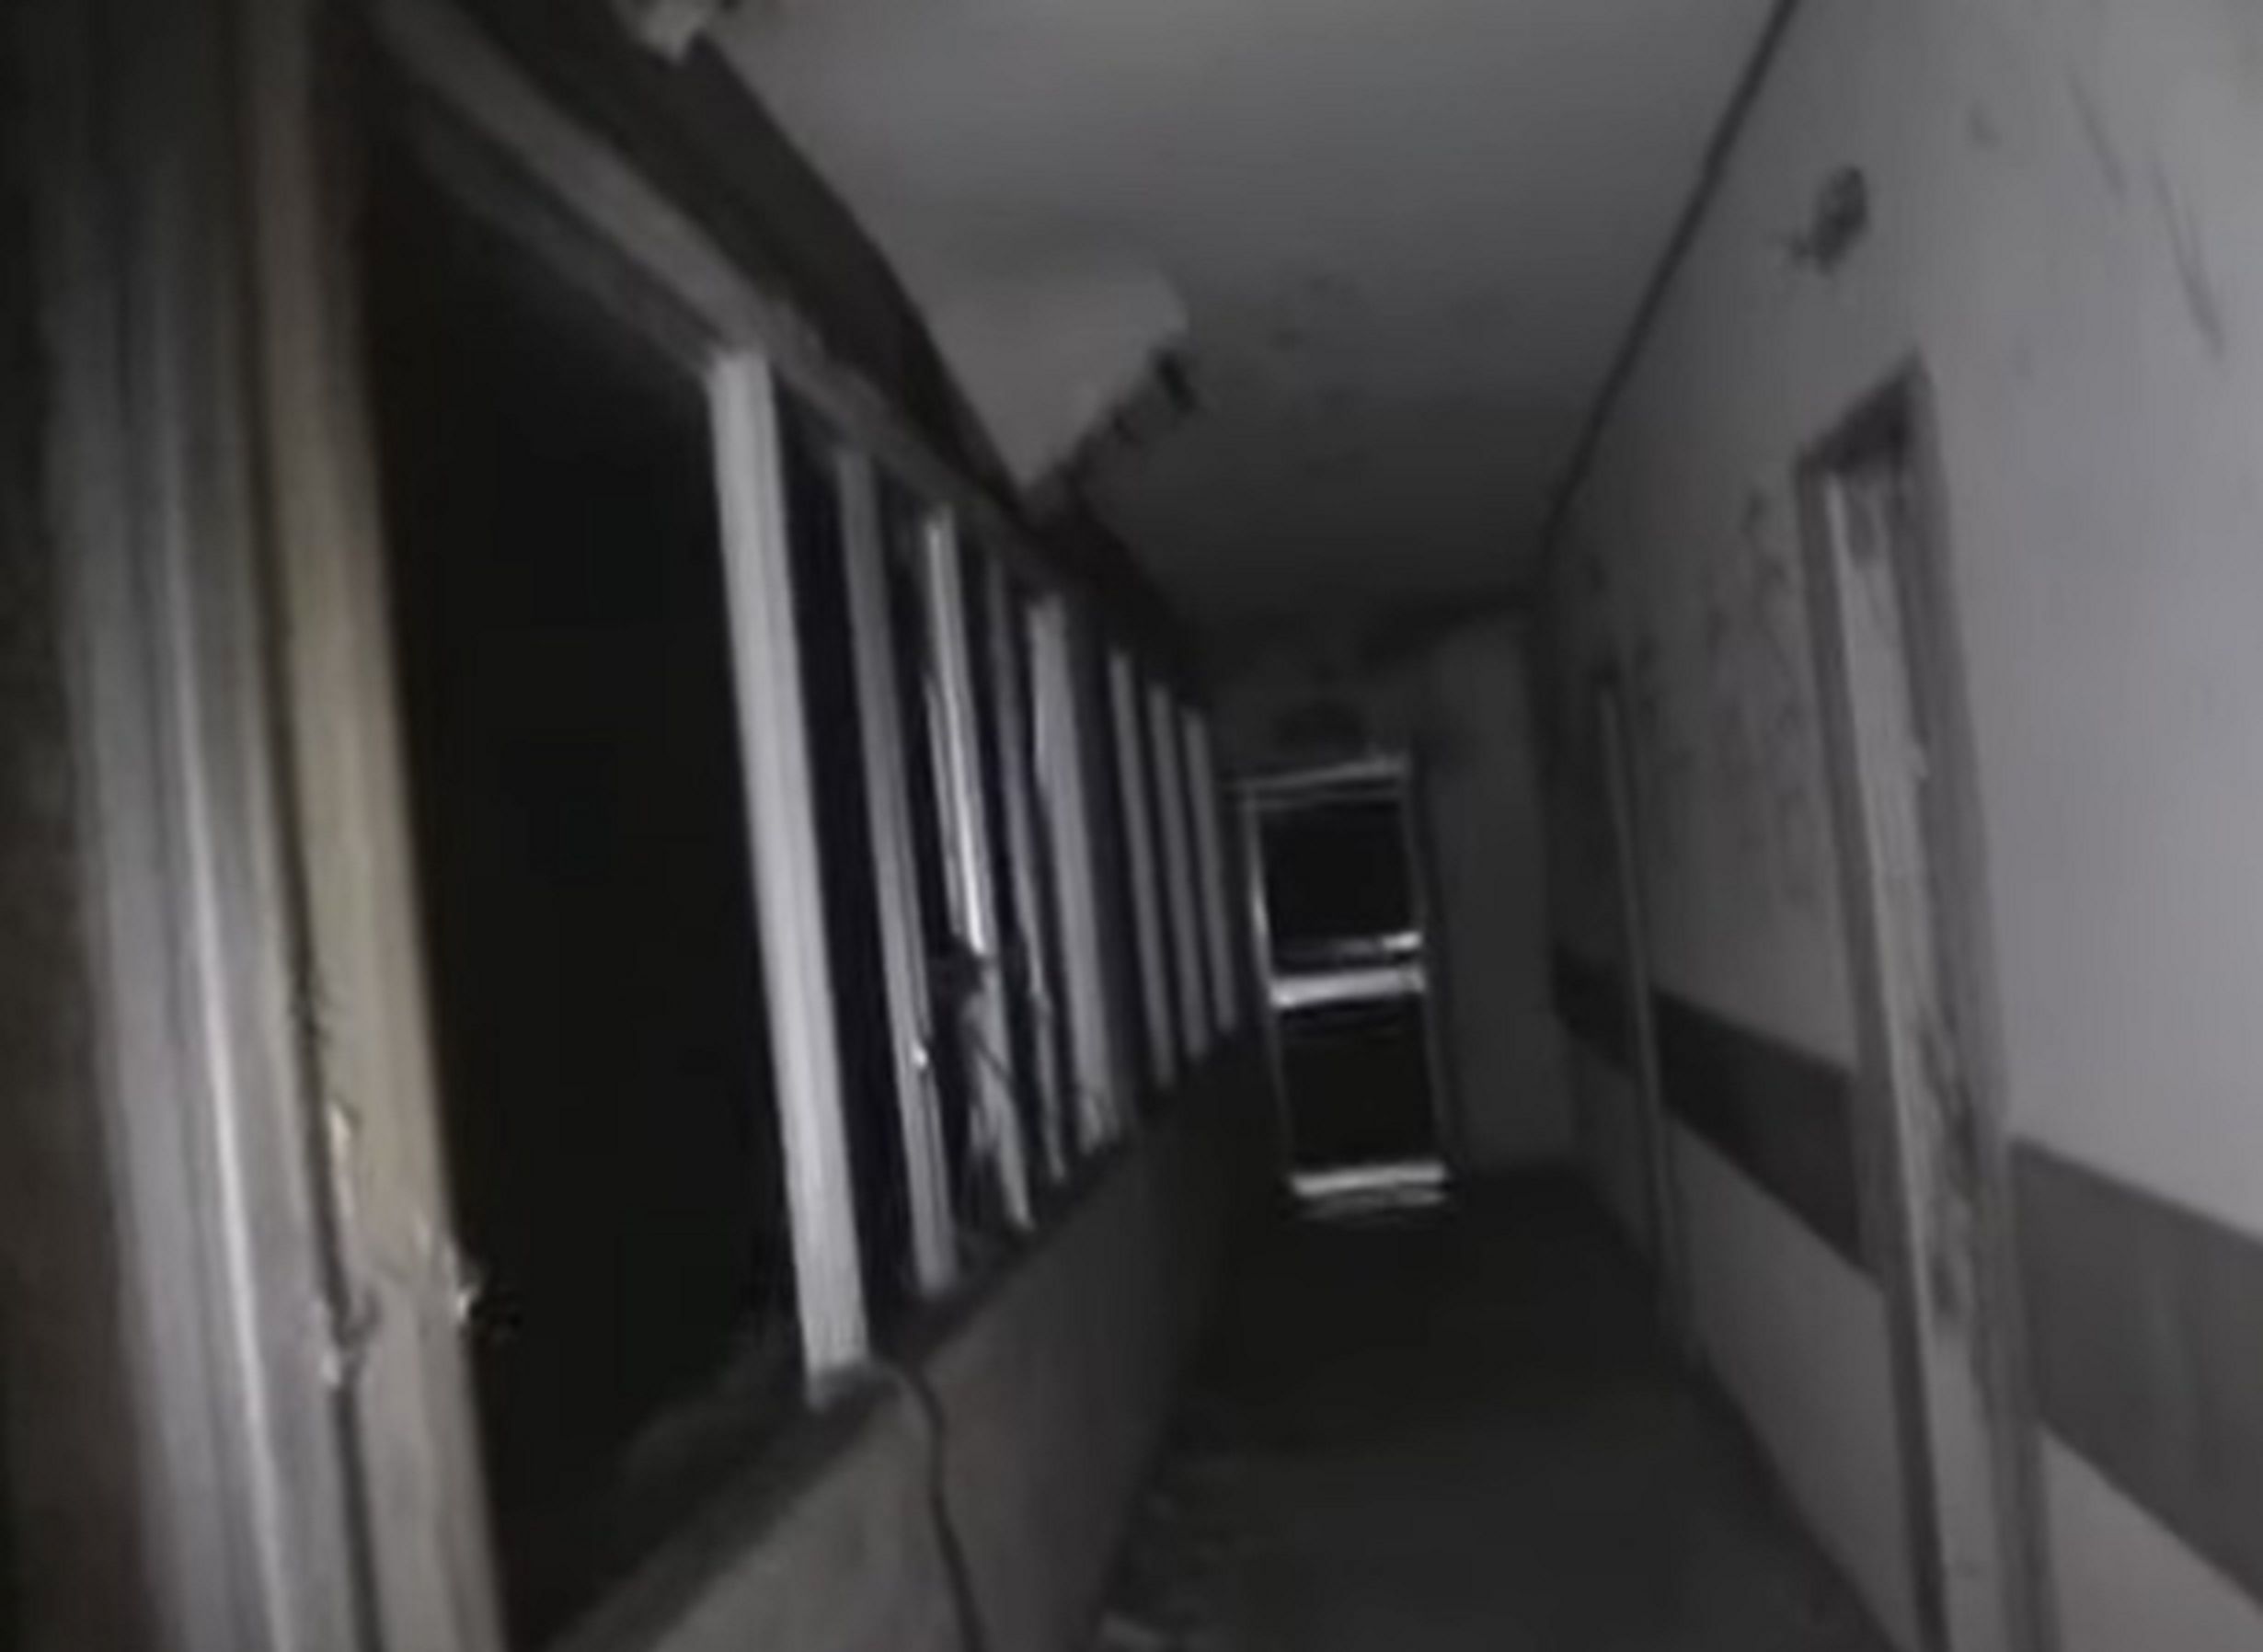  Tangkapan layar dari video tahun 2010 yang menjelajahi Hotel Tsubono yang terlantar.  